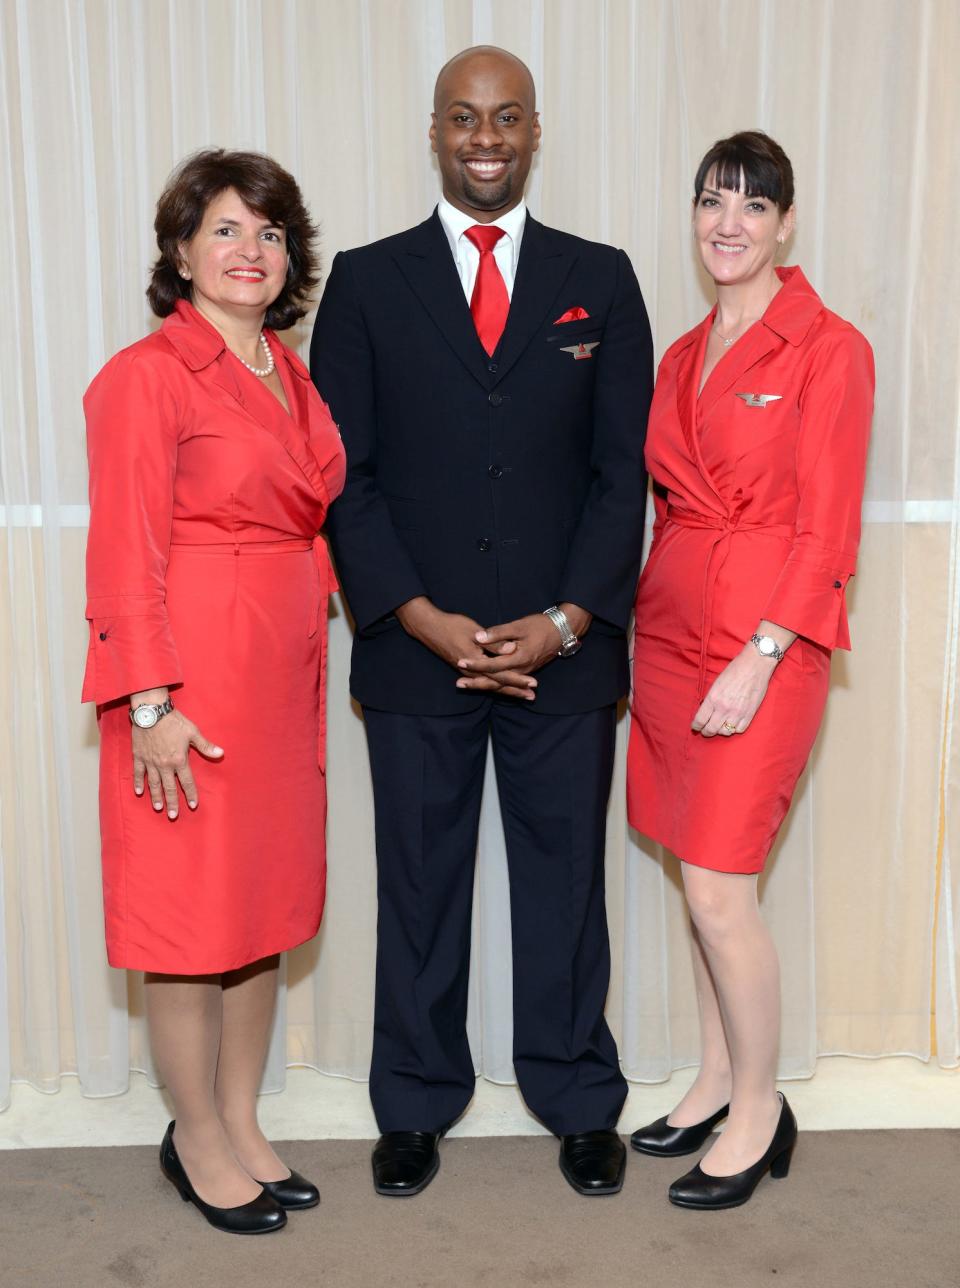 delta flight attendants uniform red